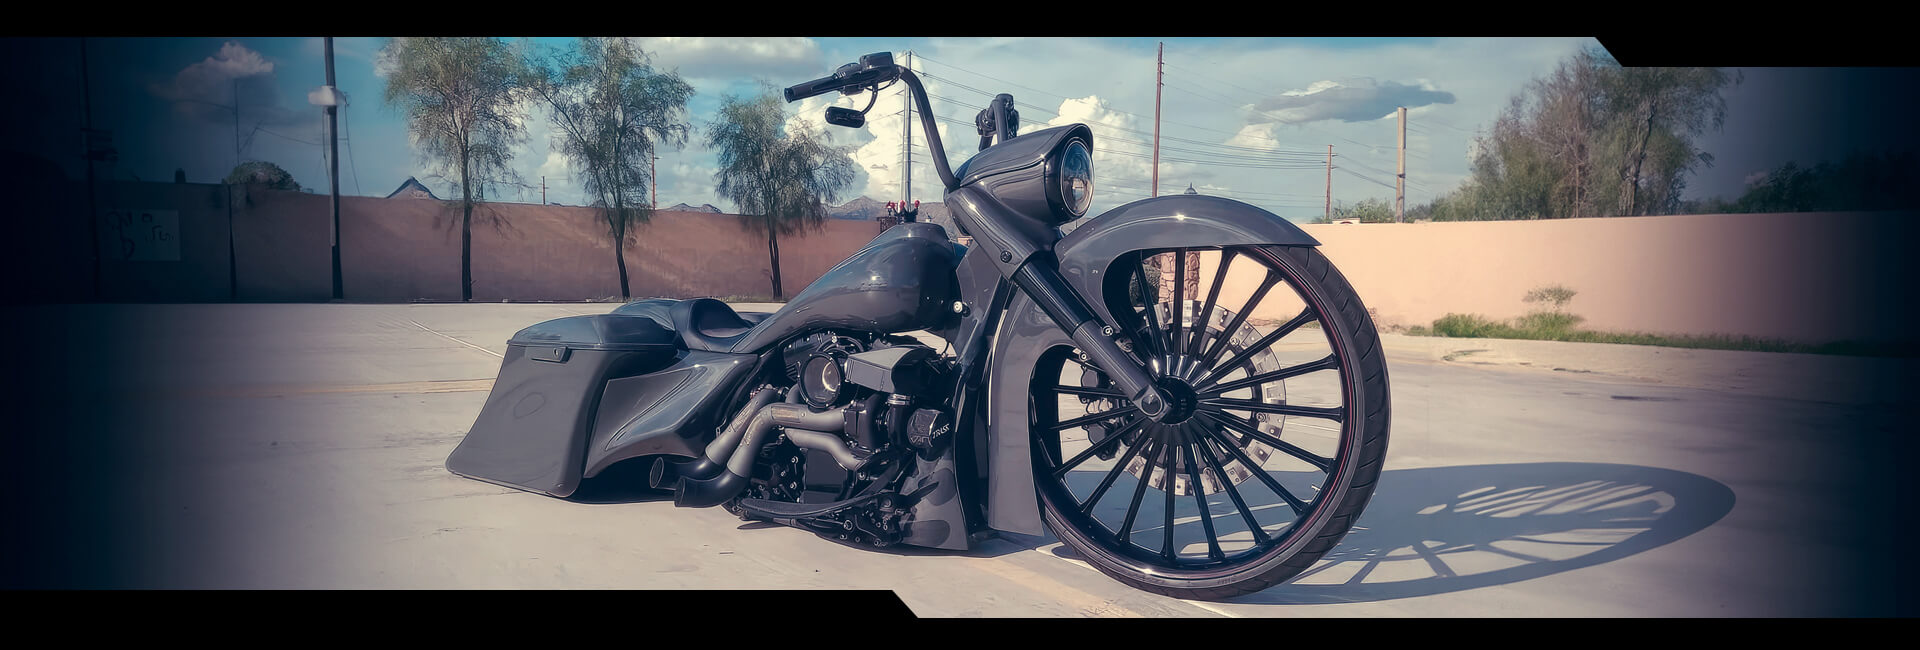 Custom Harley Fat Spoke Wheels From SMT